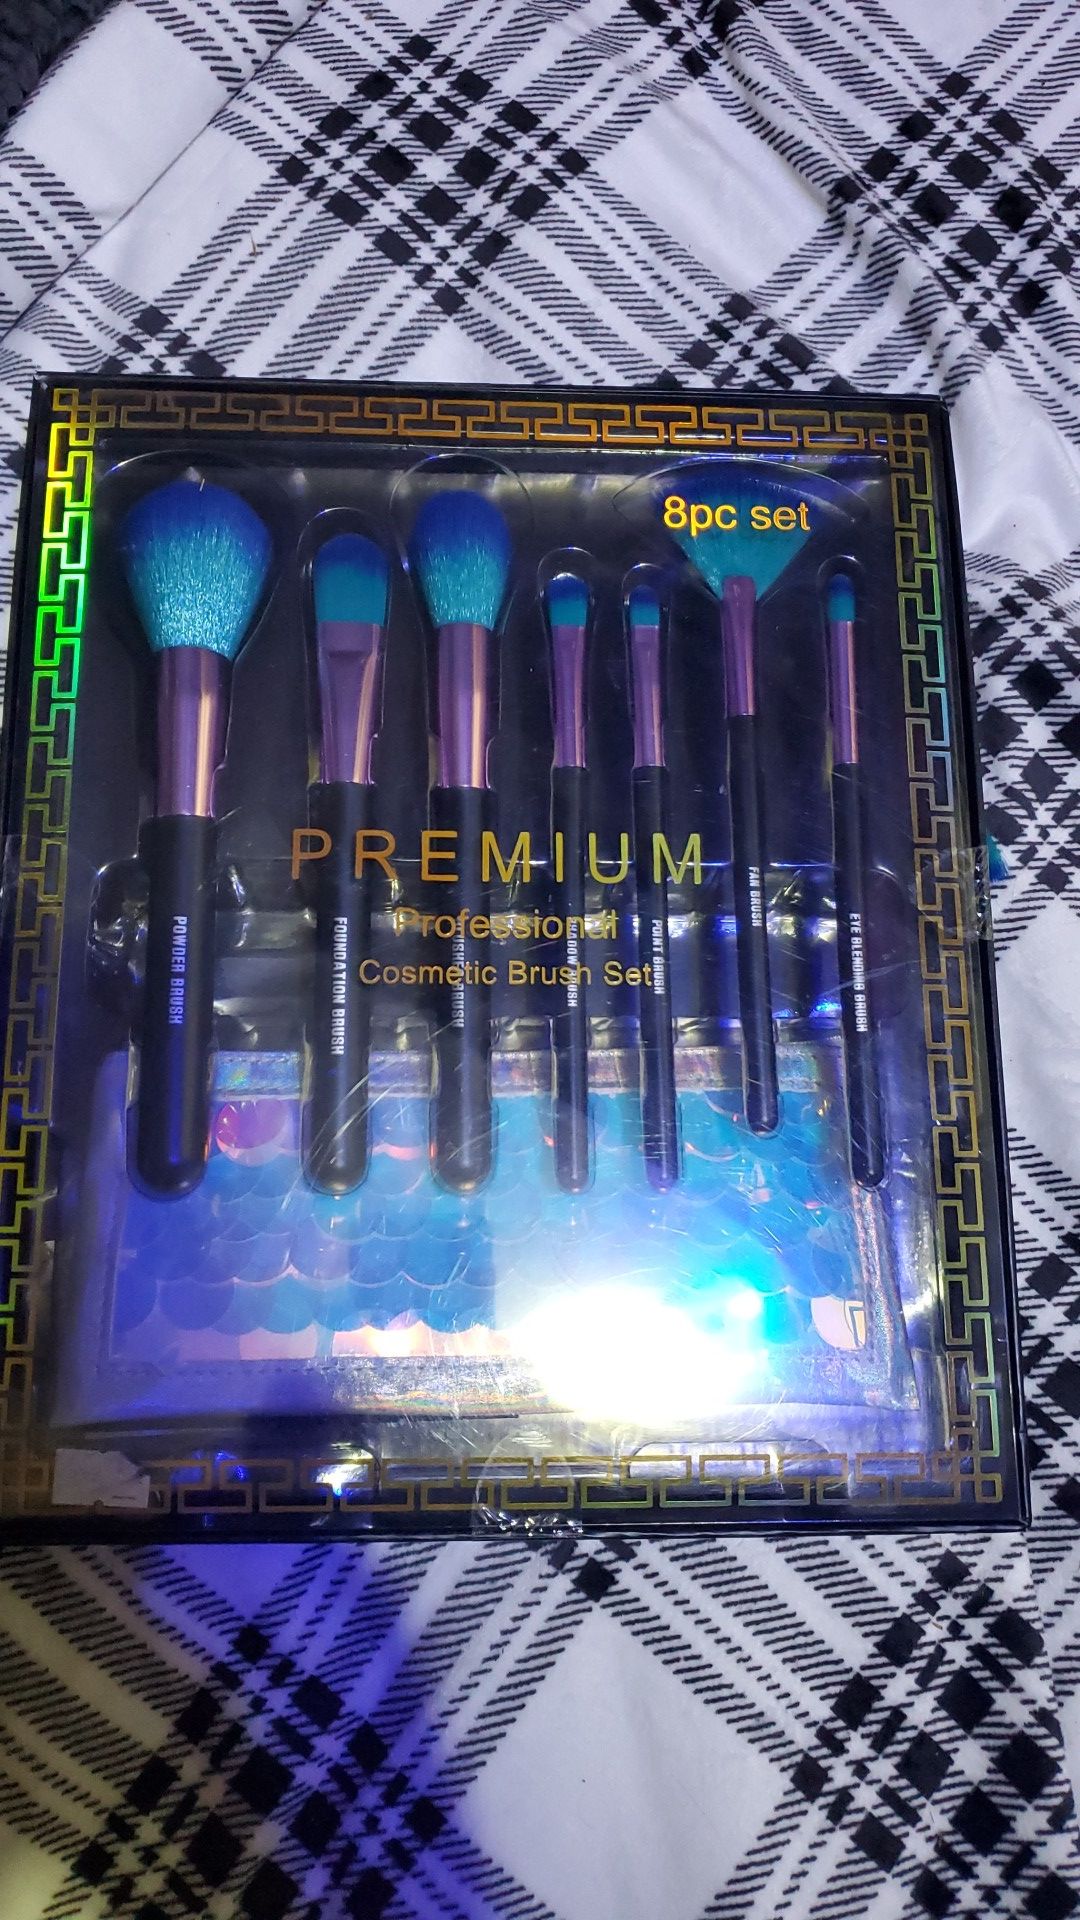 Premium professional cosmetic brush set